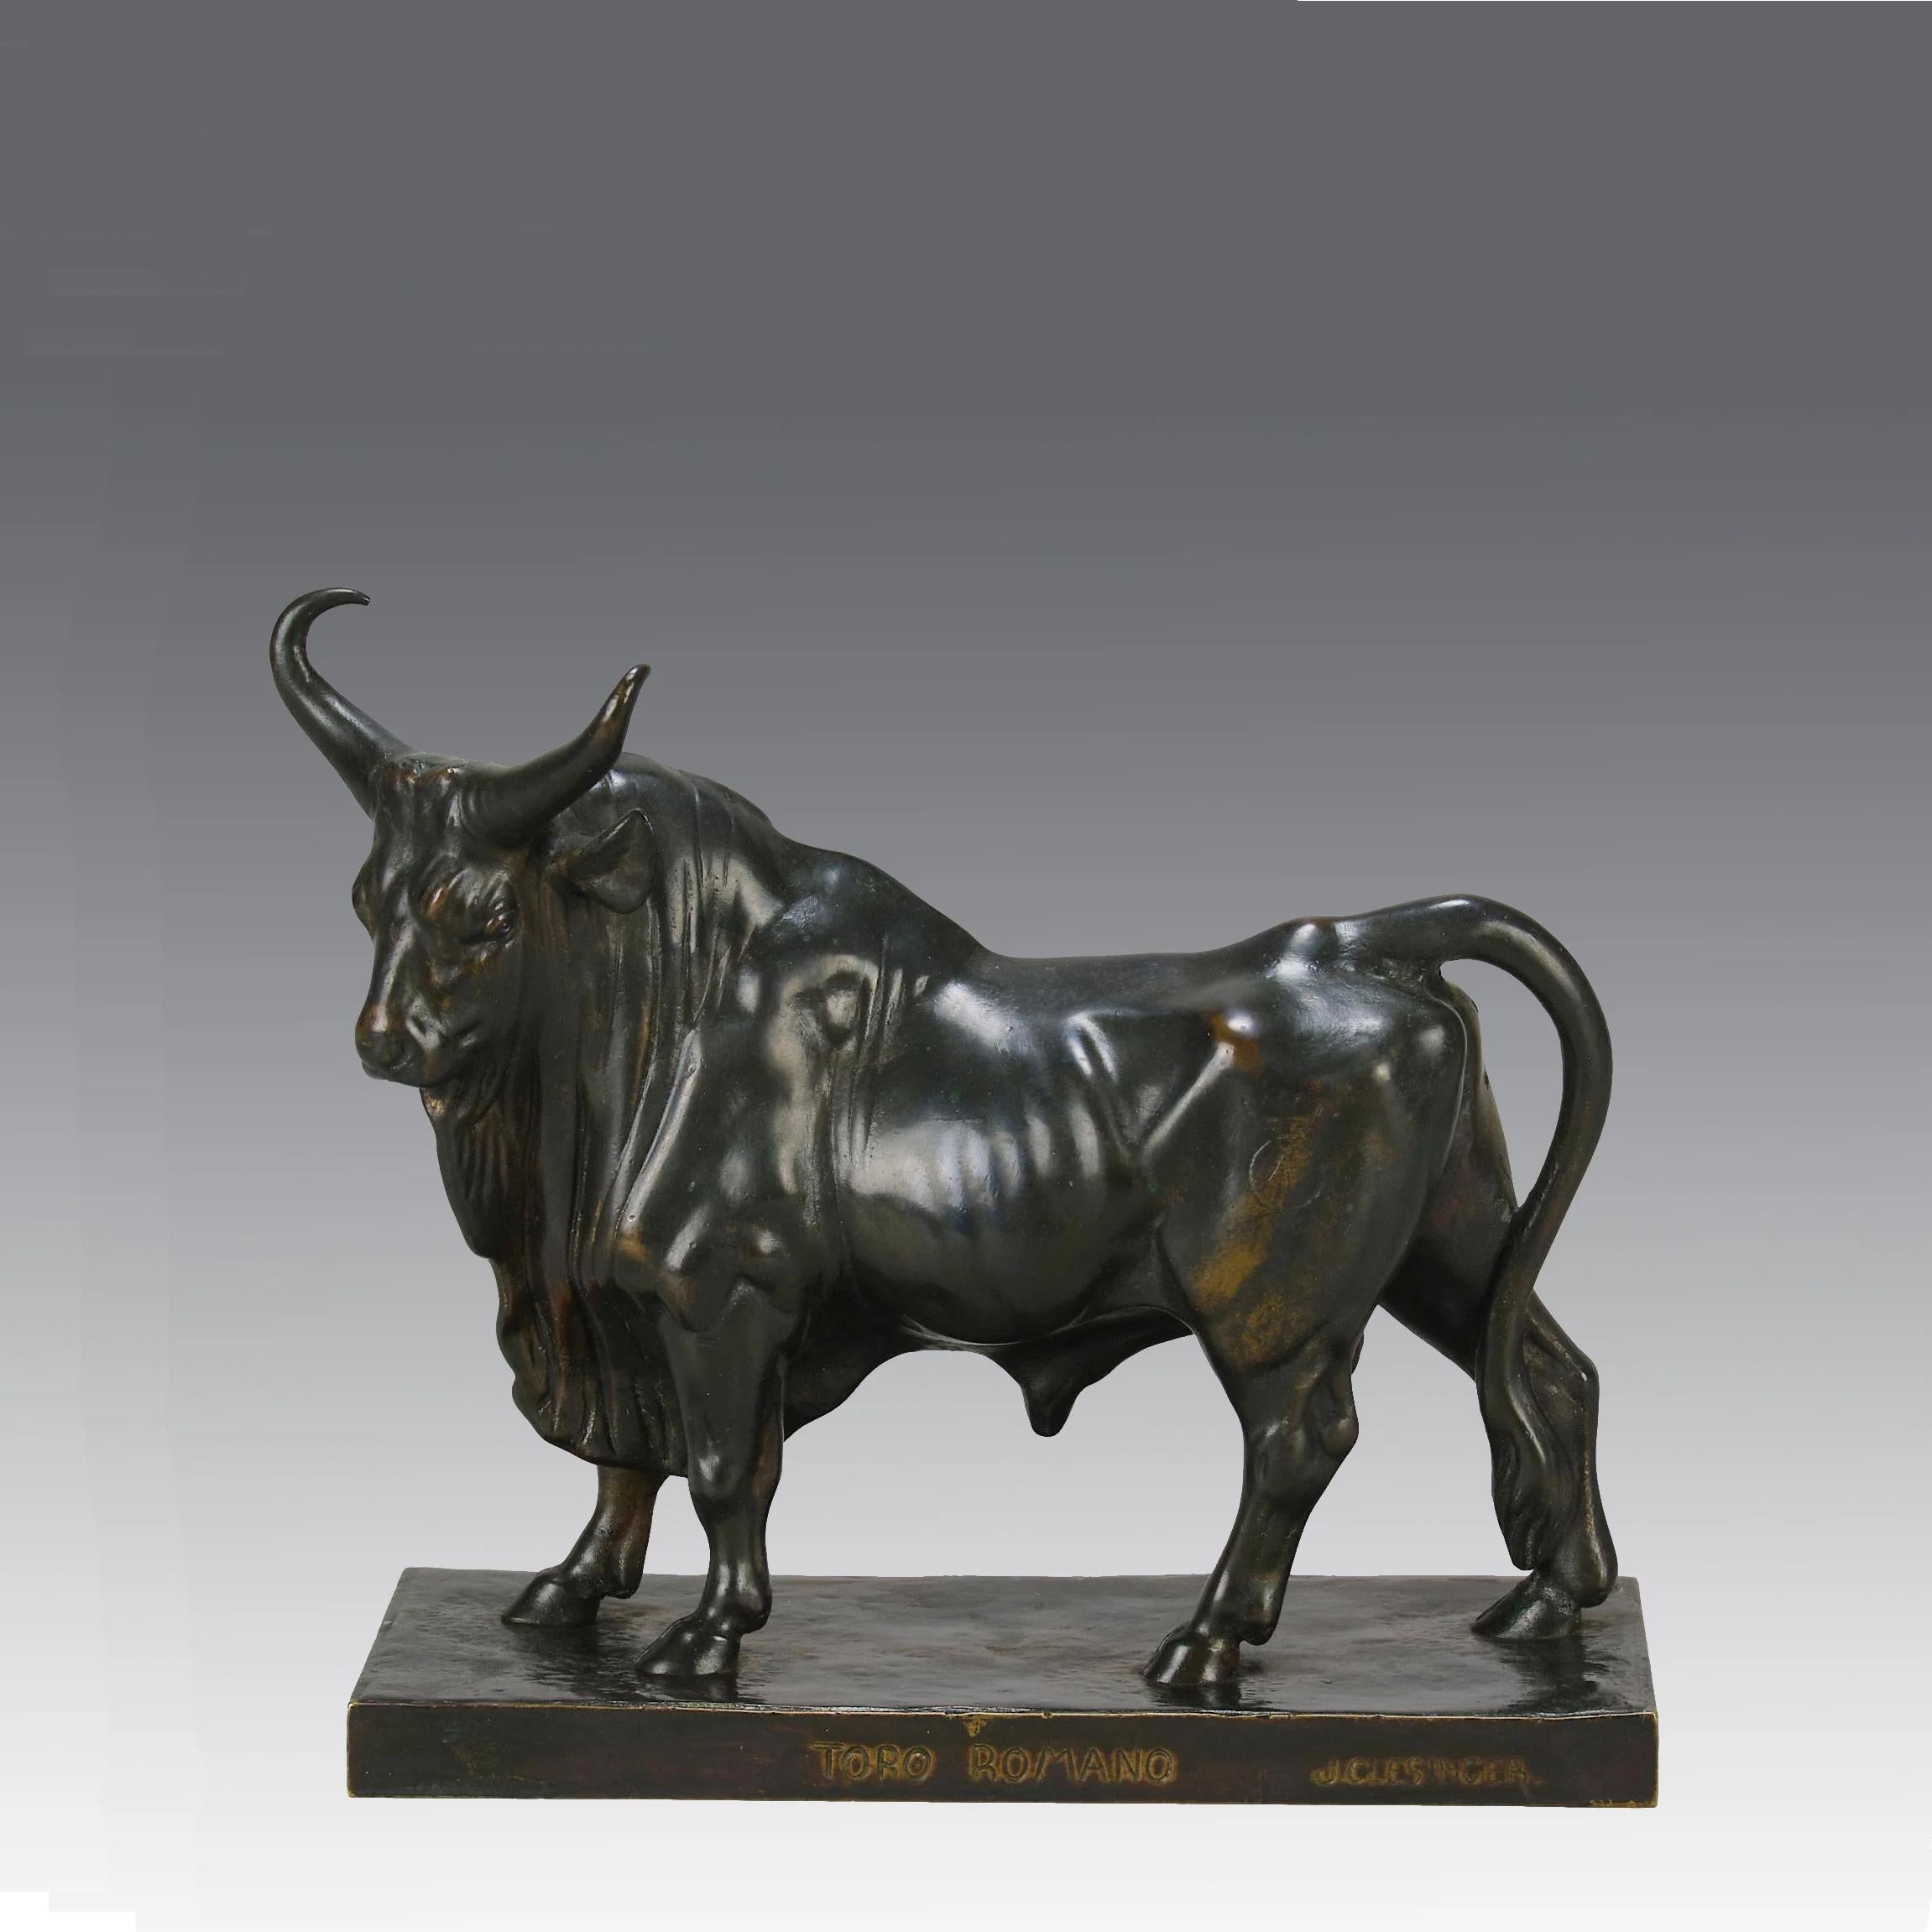 Eine prächtige französische Bronzestudie aus dem späten 19. Jahrhundert, die einen großen Stier in stolzer Haltung zeigt. Die Bronze weist ausgezeichnete handziselierte Oberflächendetails und eine feine, reiche braune Patina auf. Erhöht auf einem